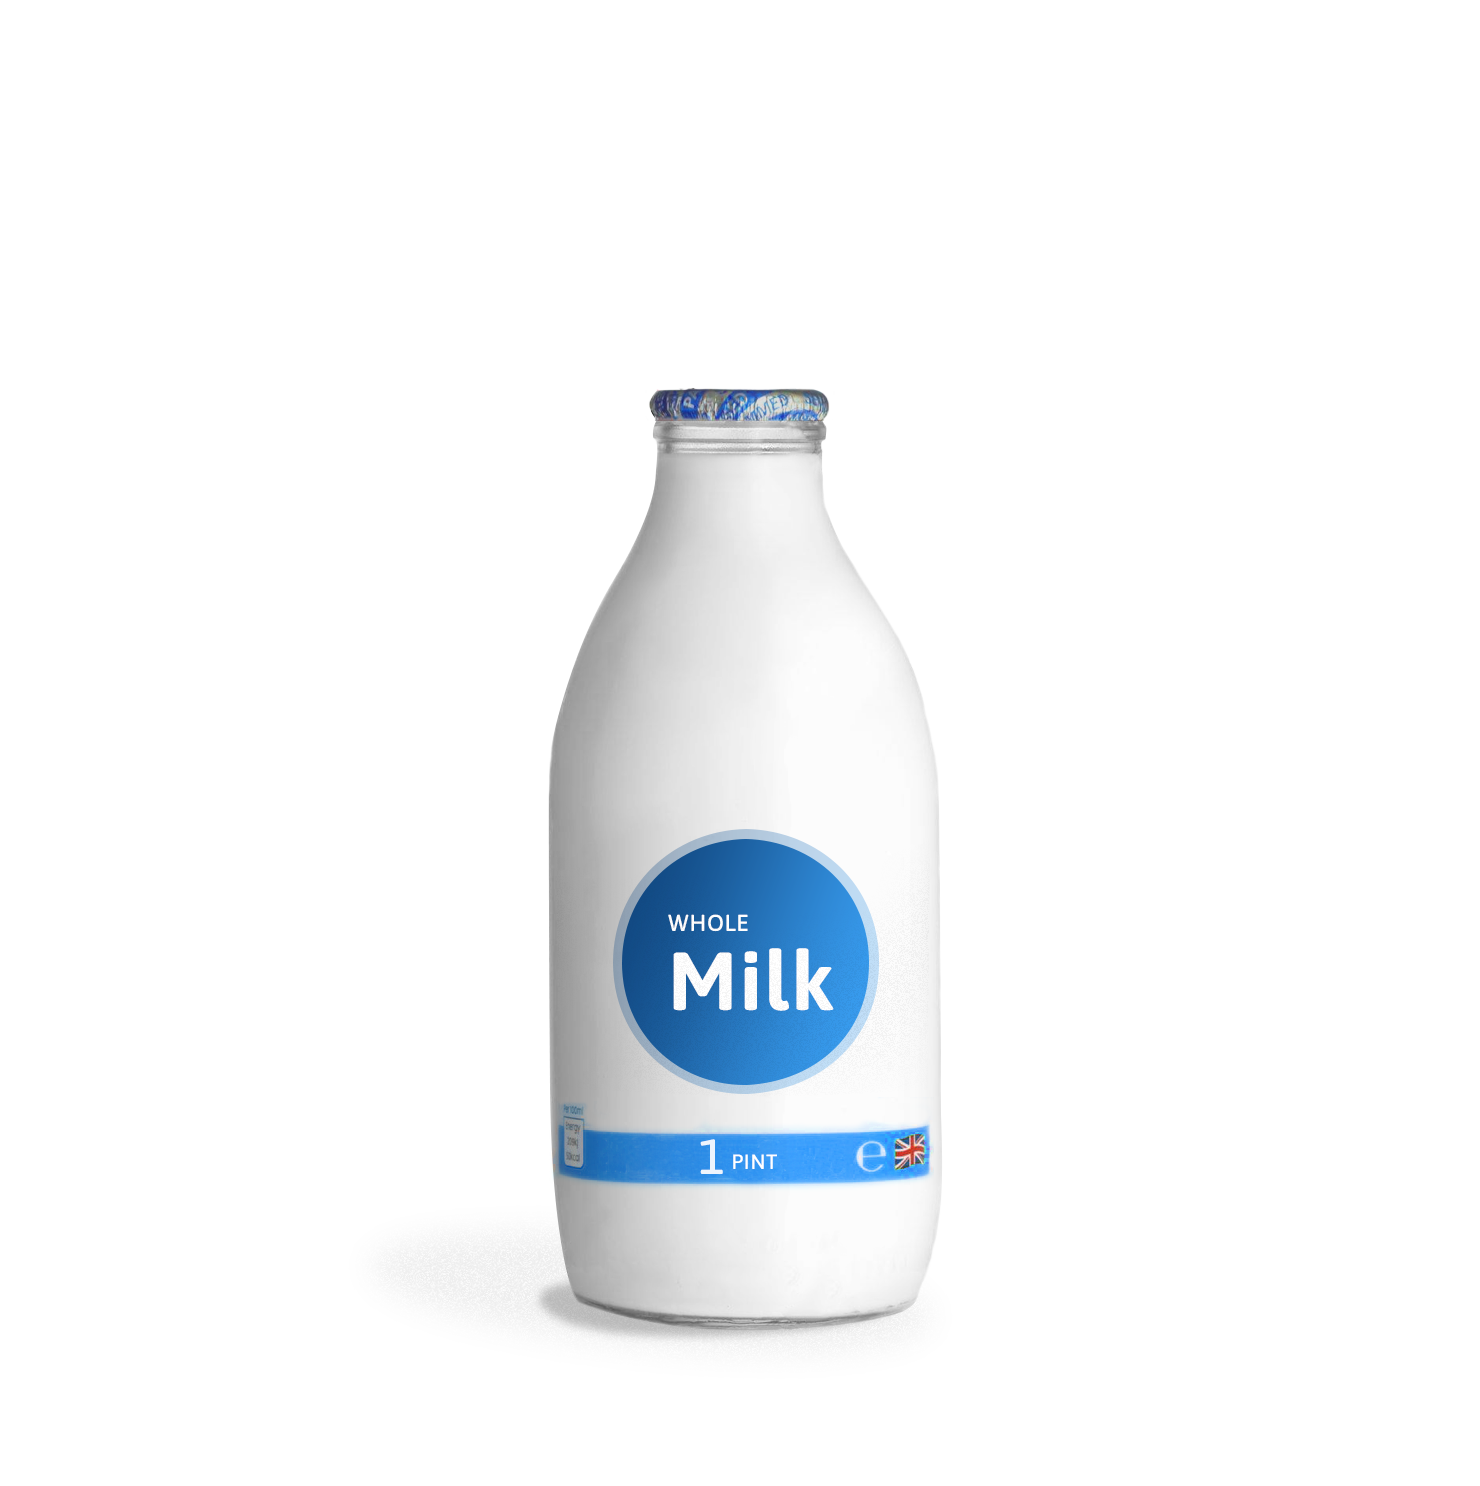 MILKミルク